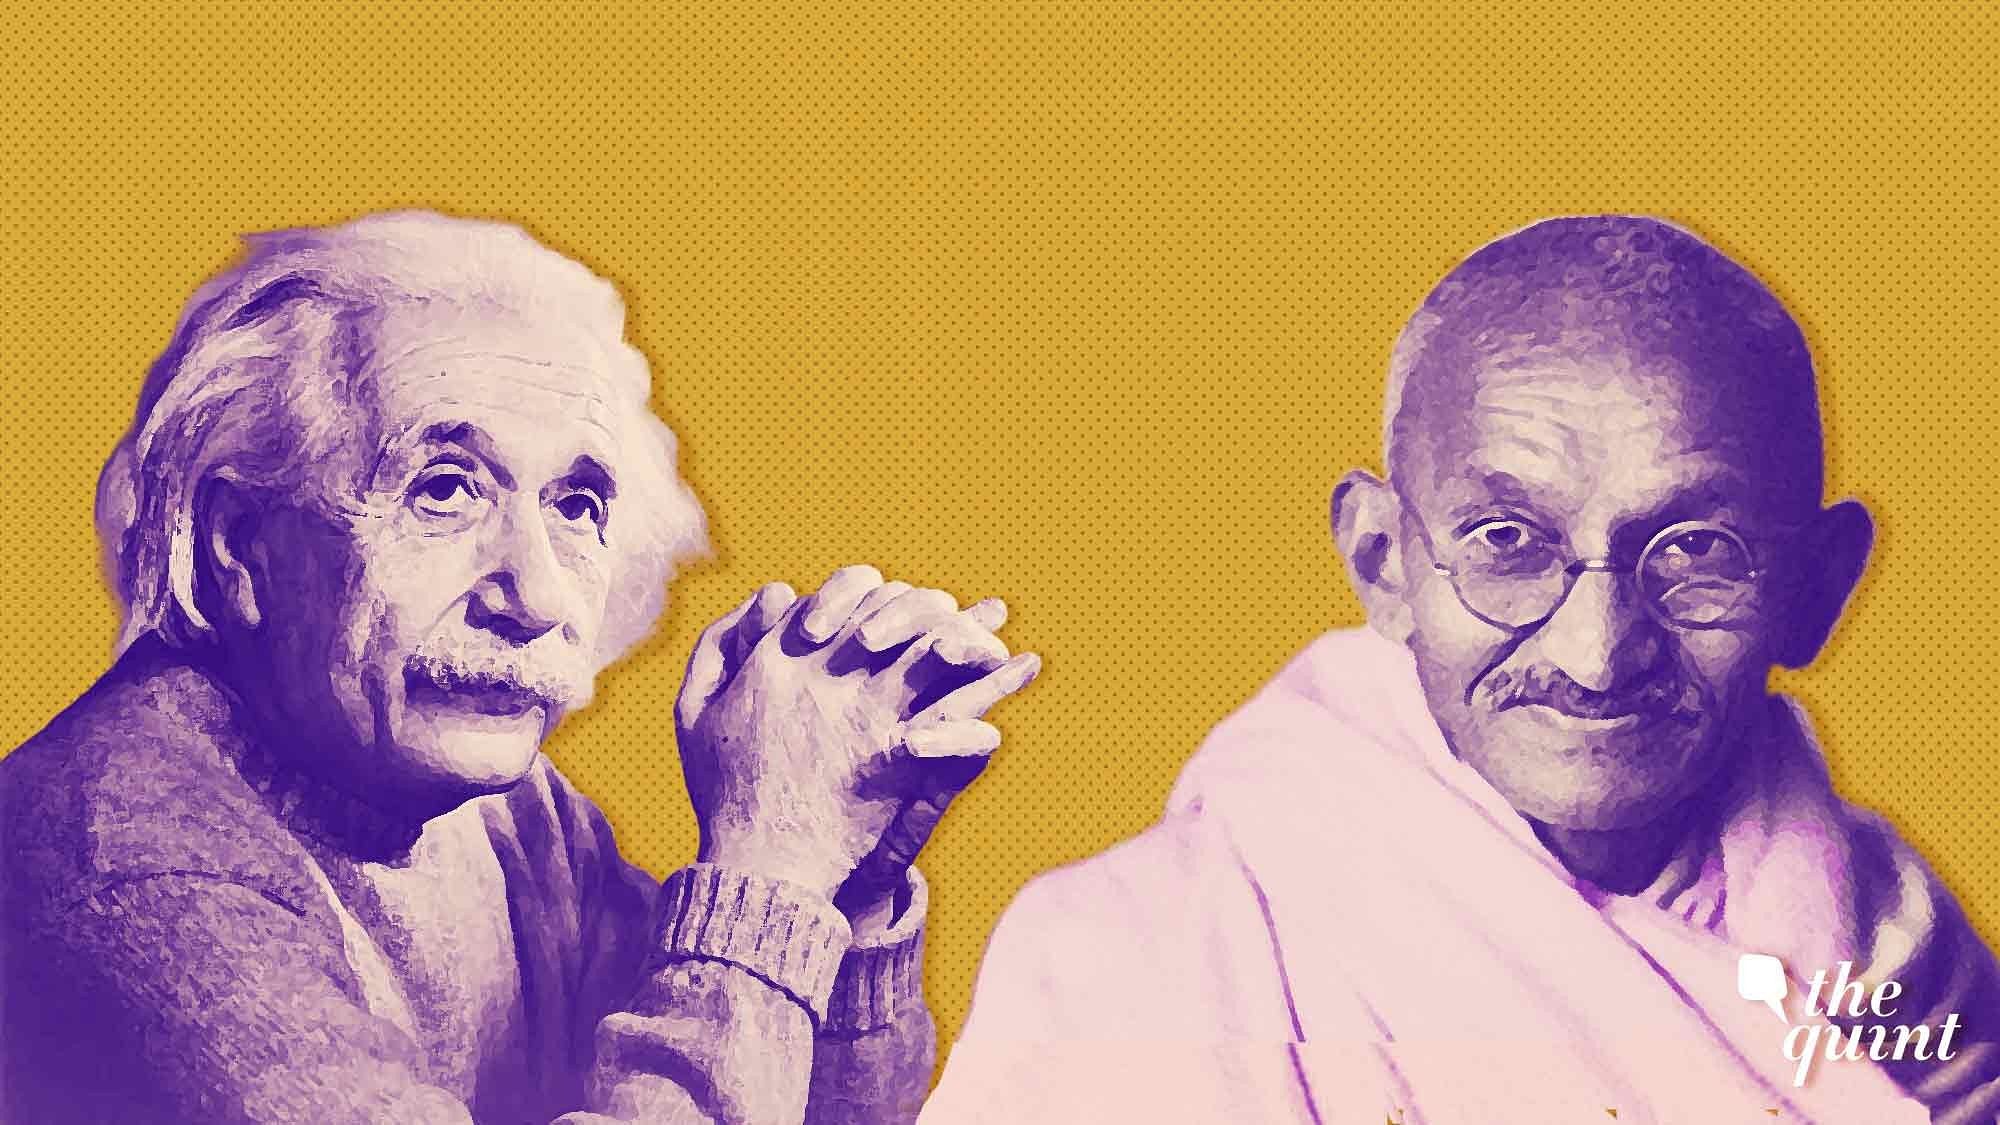 क्या आप जानते हैं कि आइंस्टीन ने सबसे ज्यादा किस भारतीय के साथ काम किया?